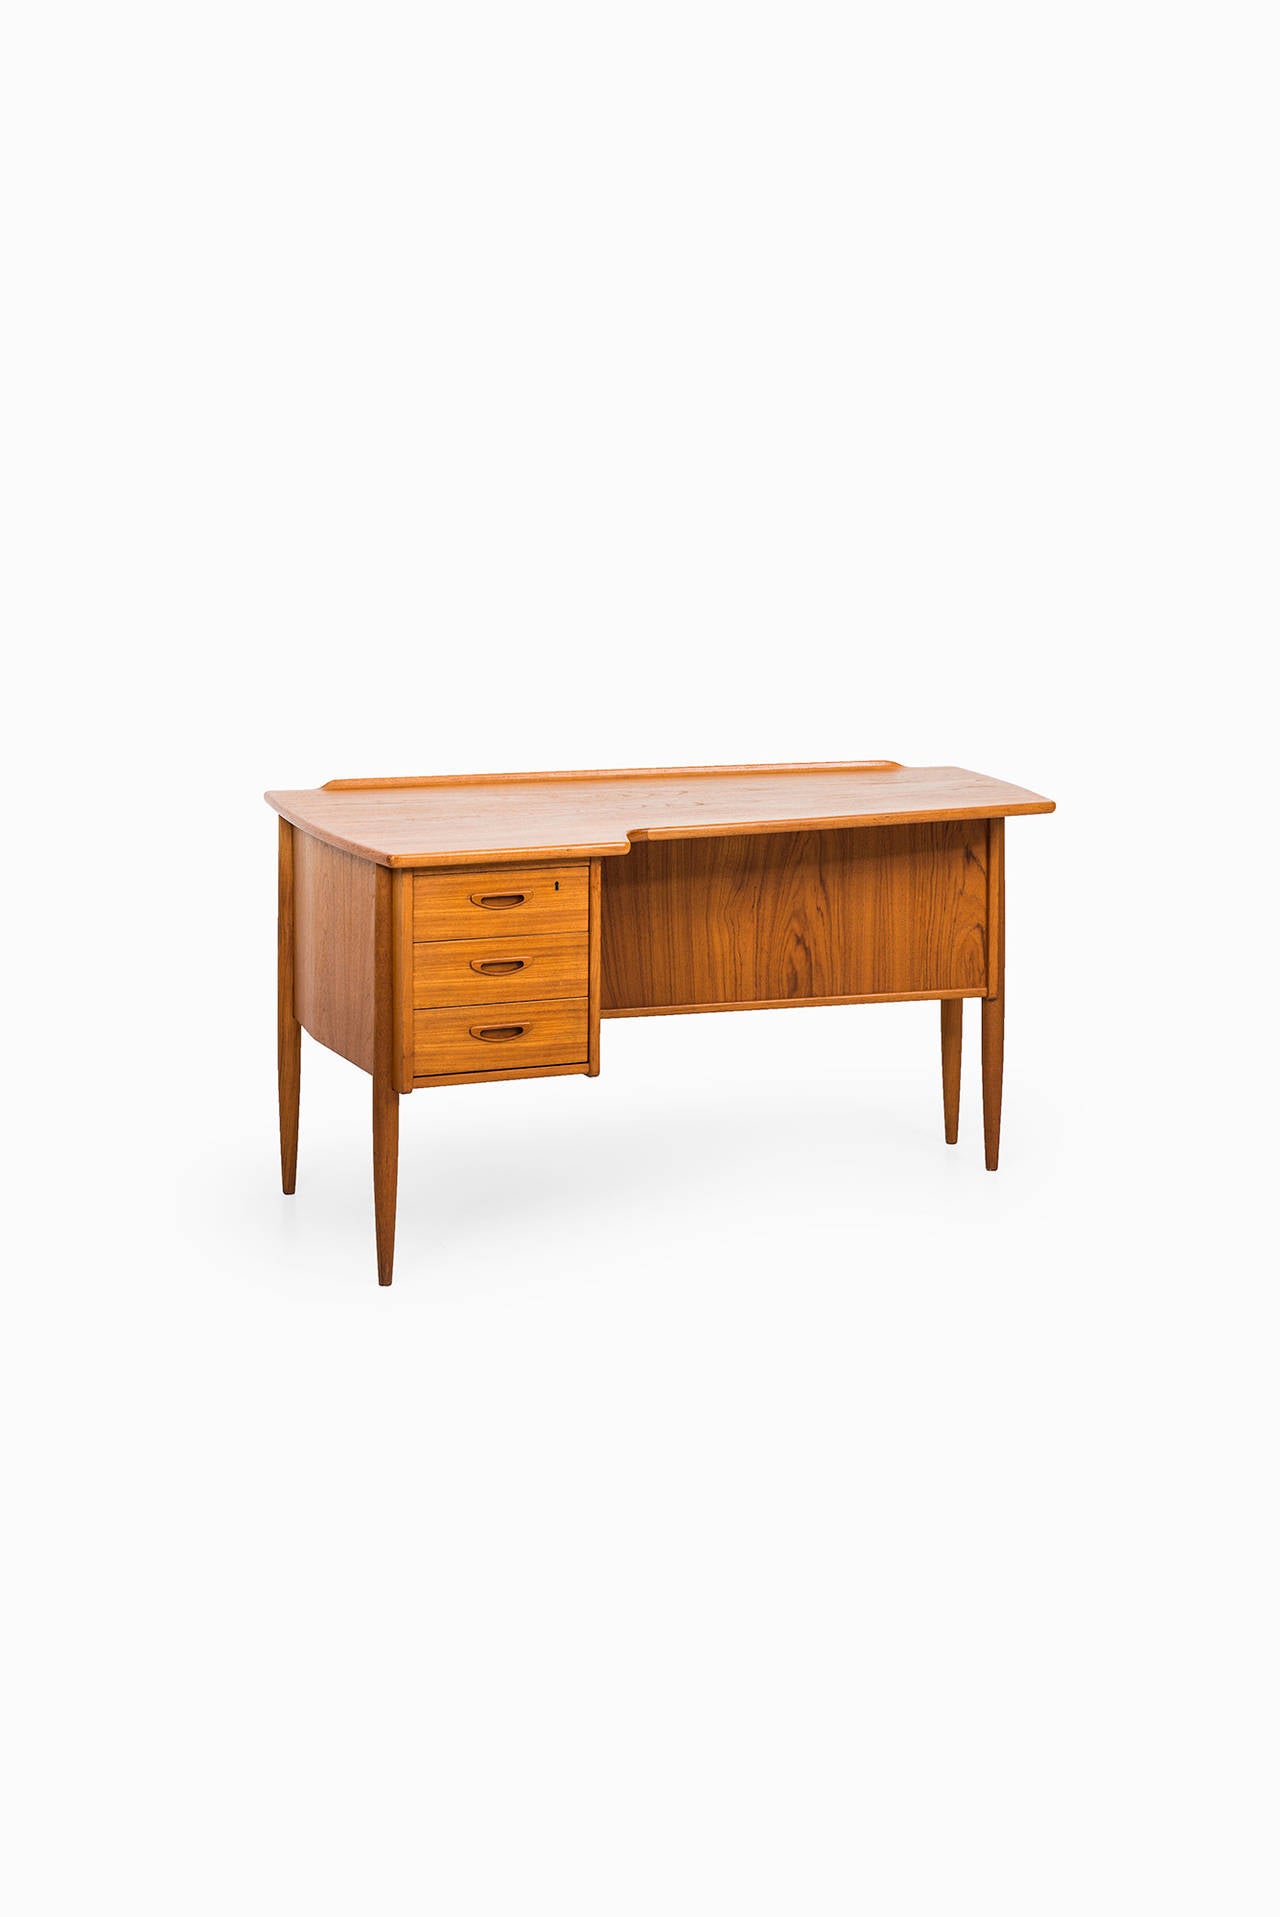 Göran Strand Desk Model A10 by Lelångs Möbelfabrik in Sweden In Excellent Condition In Limhamn, Skåne län